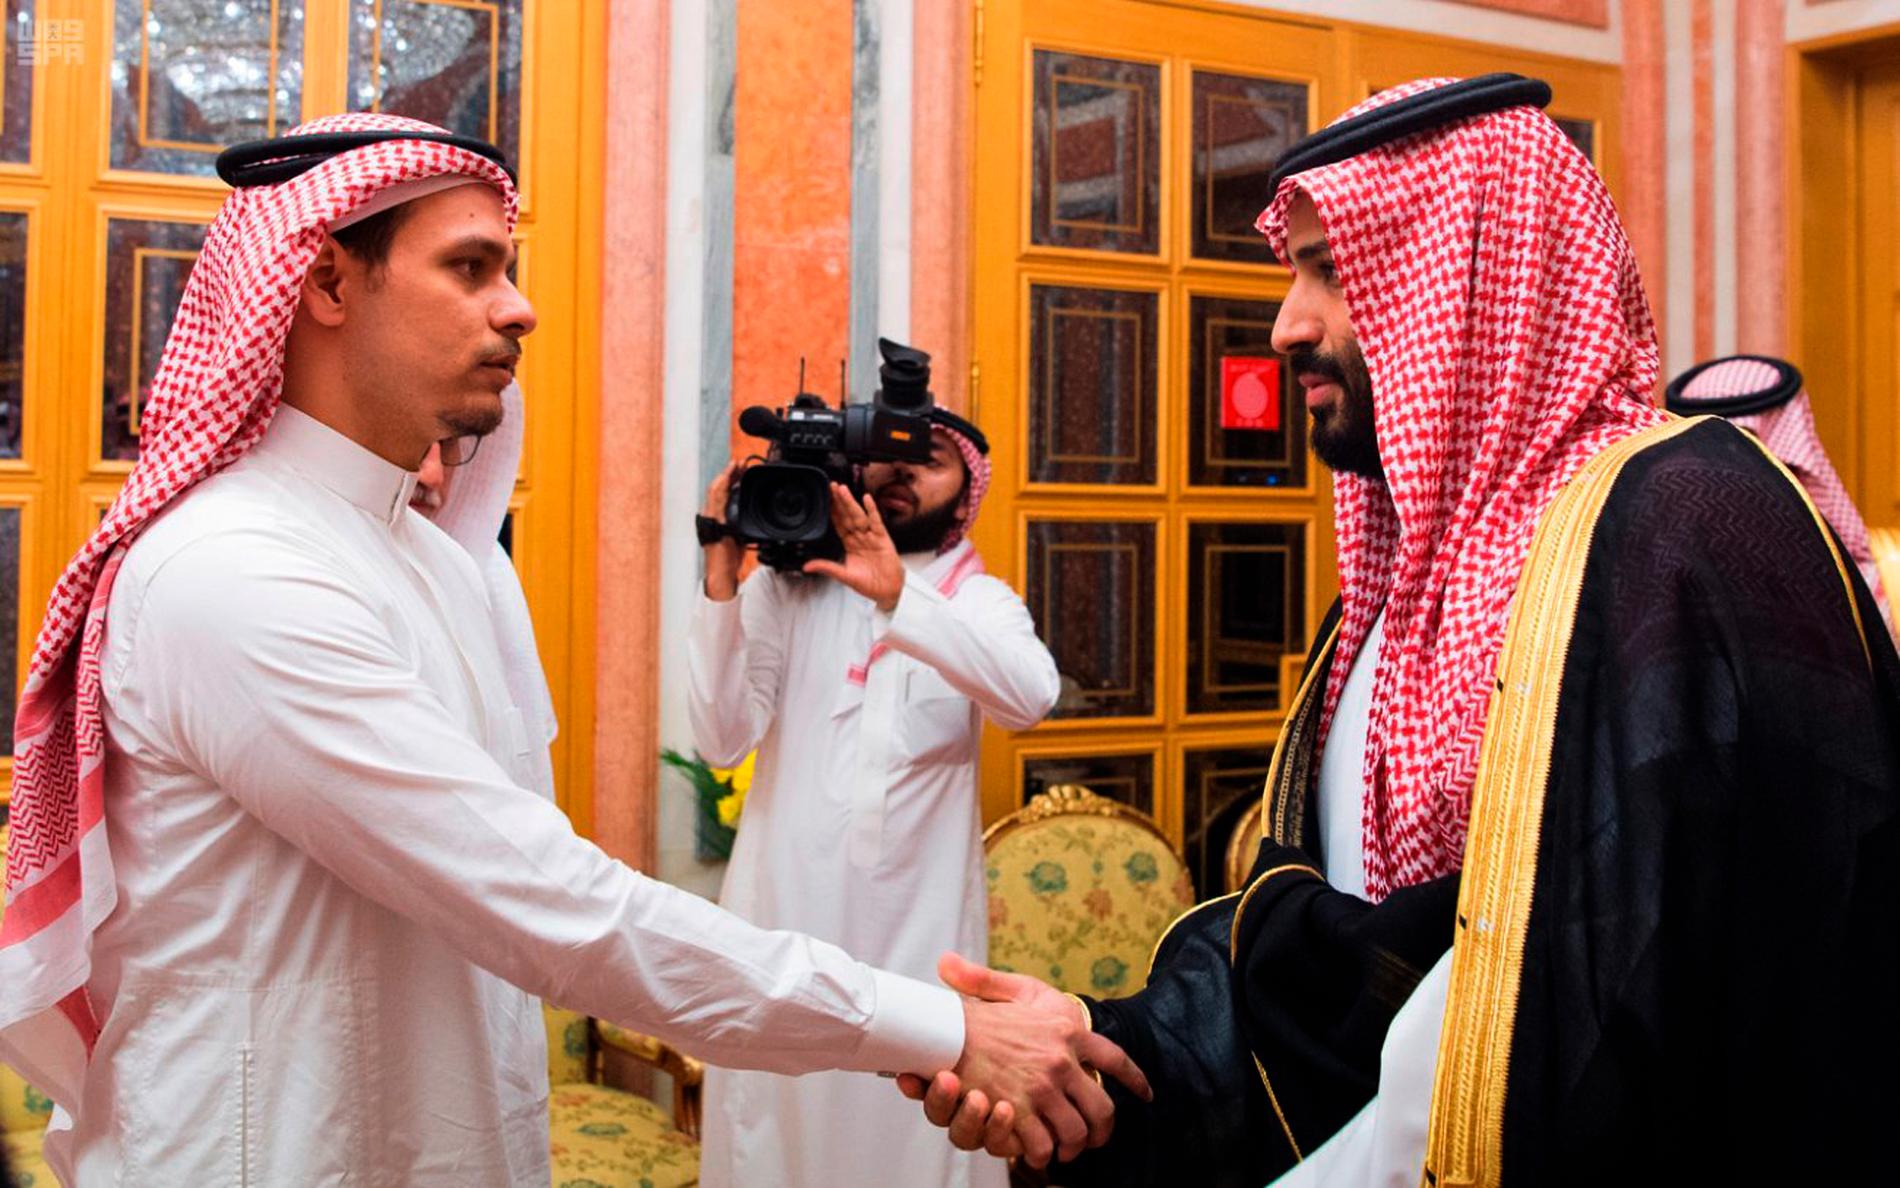 Tidigare i veckan skakade Salah bin Jamal Khashoggi (t v) hand kronprins Mohammed bin Salman under den stora omstridda investeringskonferensen som hålls i Riyad i Saudiarabien.